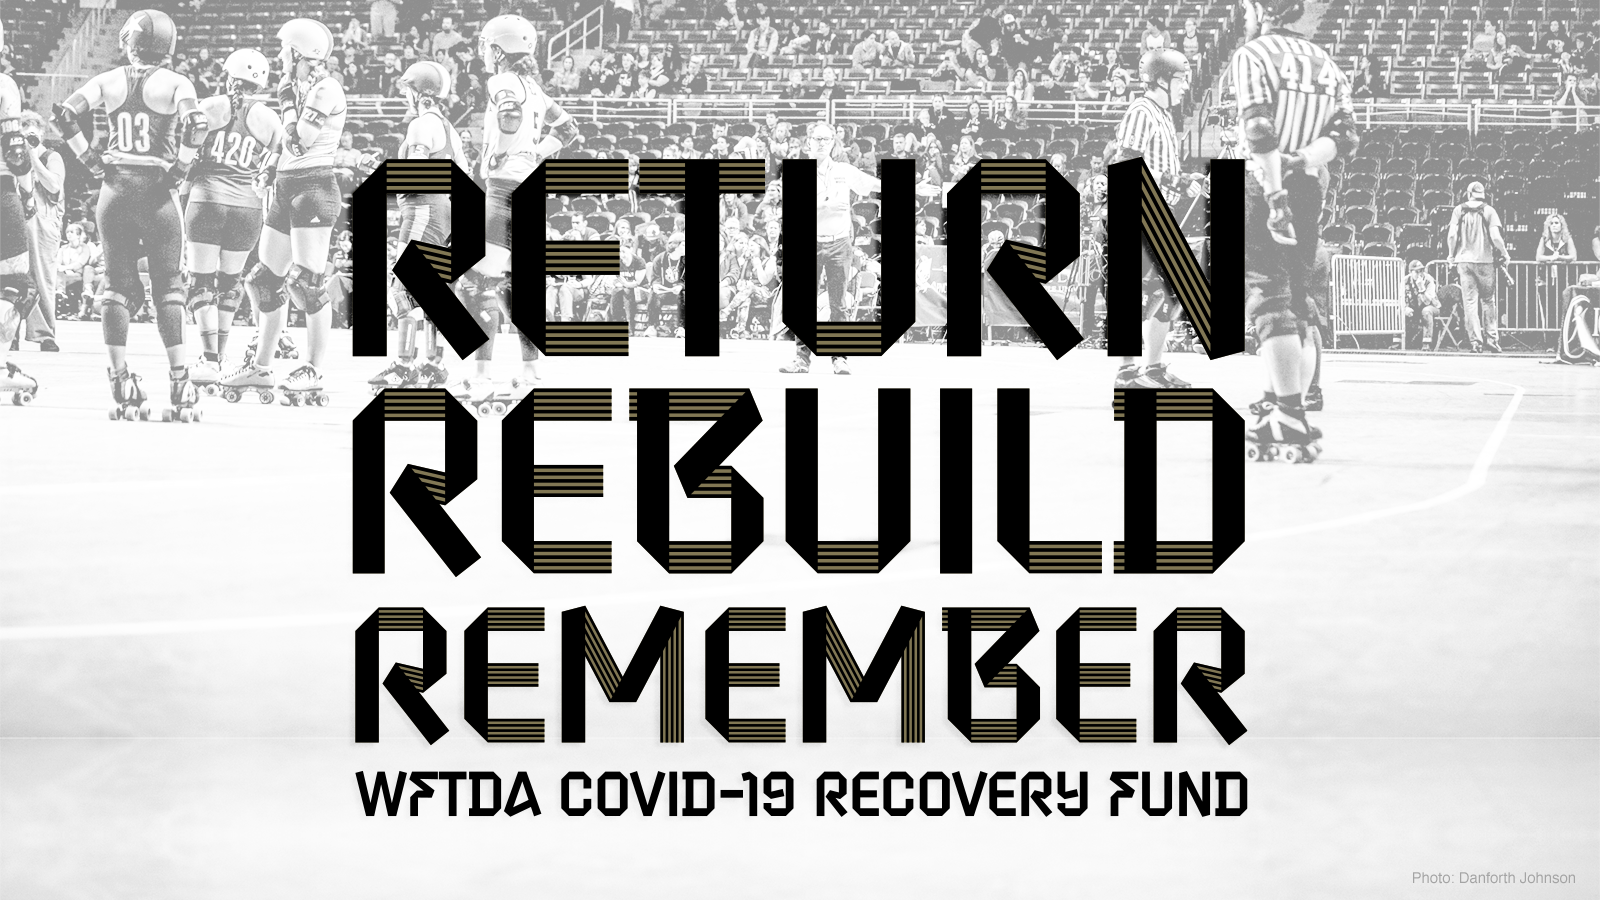 Return, Rebuild, Remember - WFTDA COVID-19 Recovery Fund